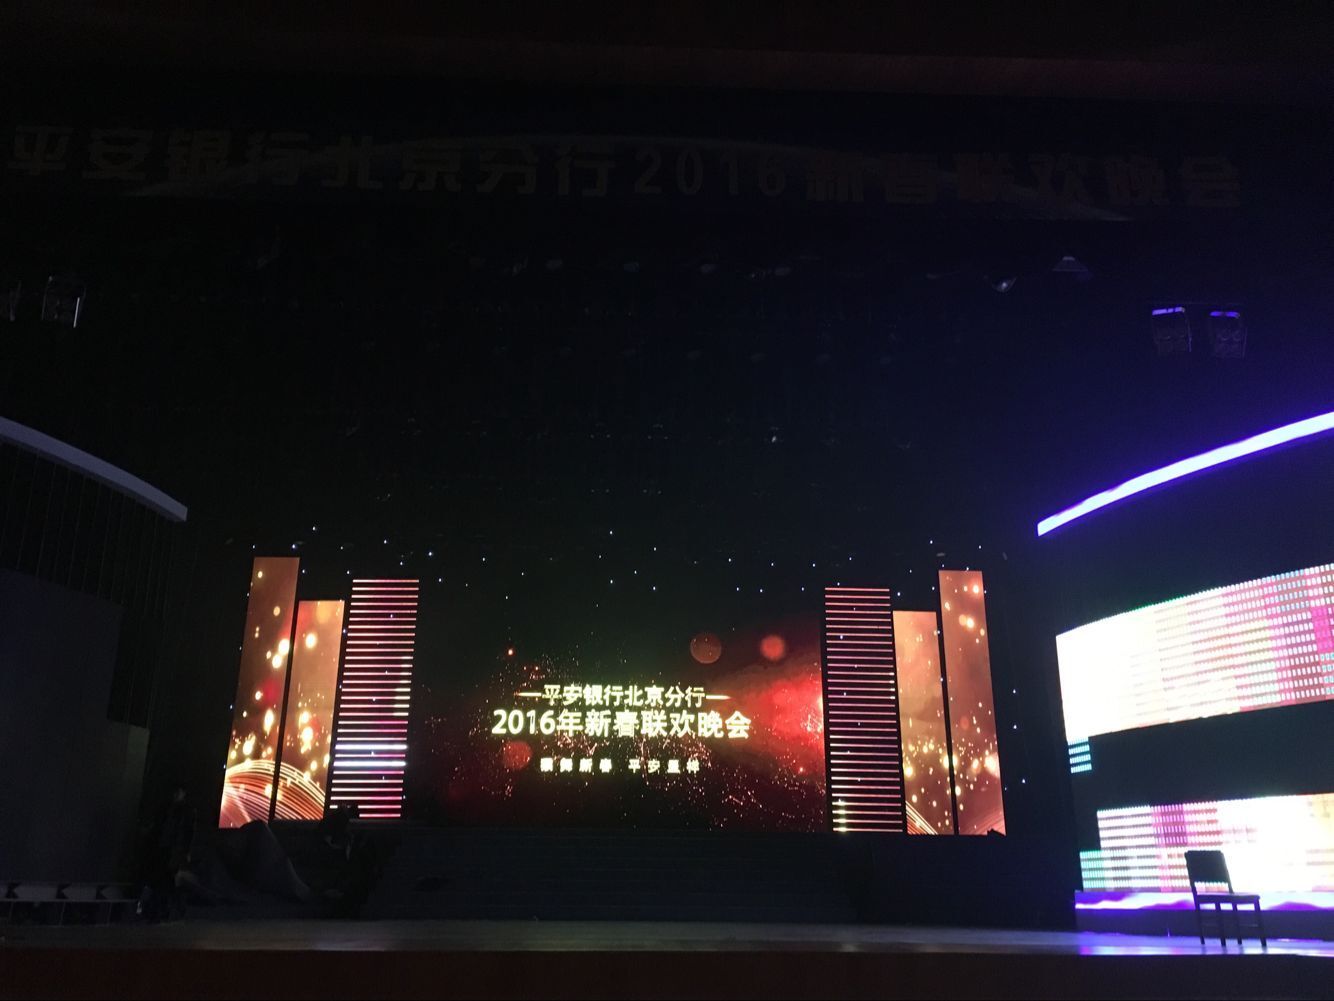 平安银行北京分行2016新春联欢晚会